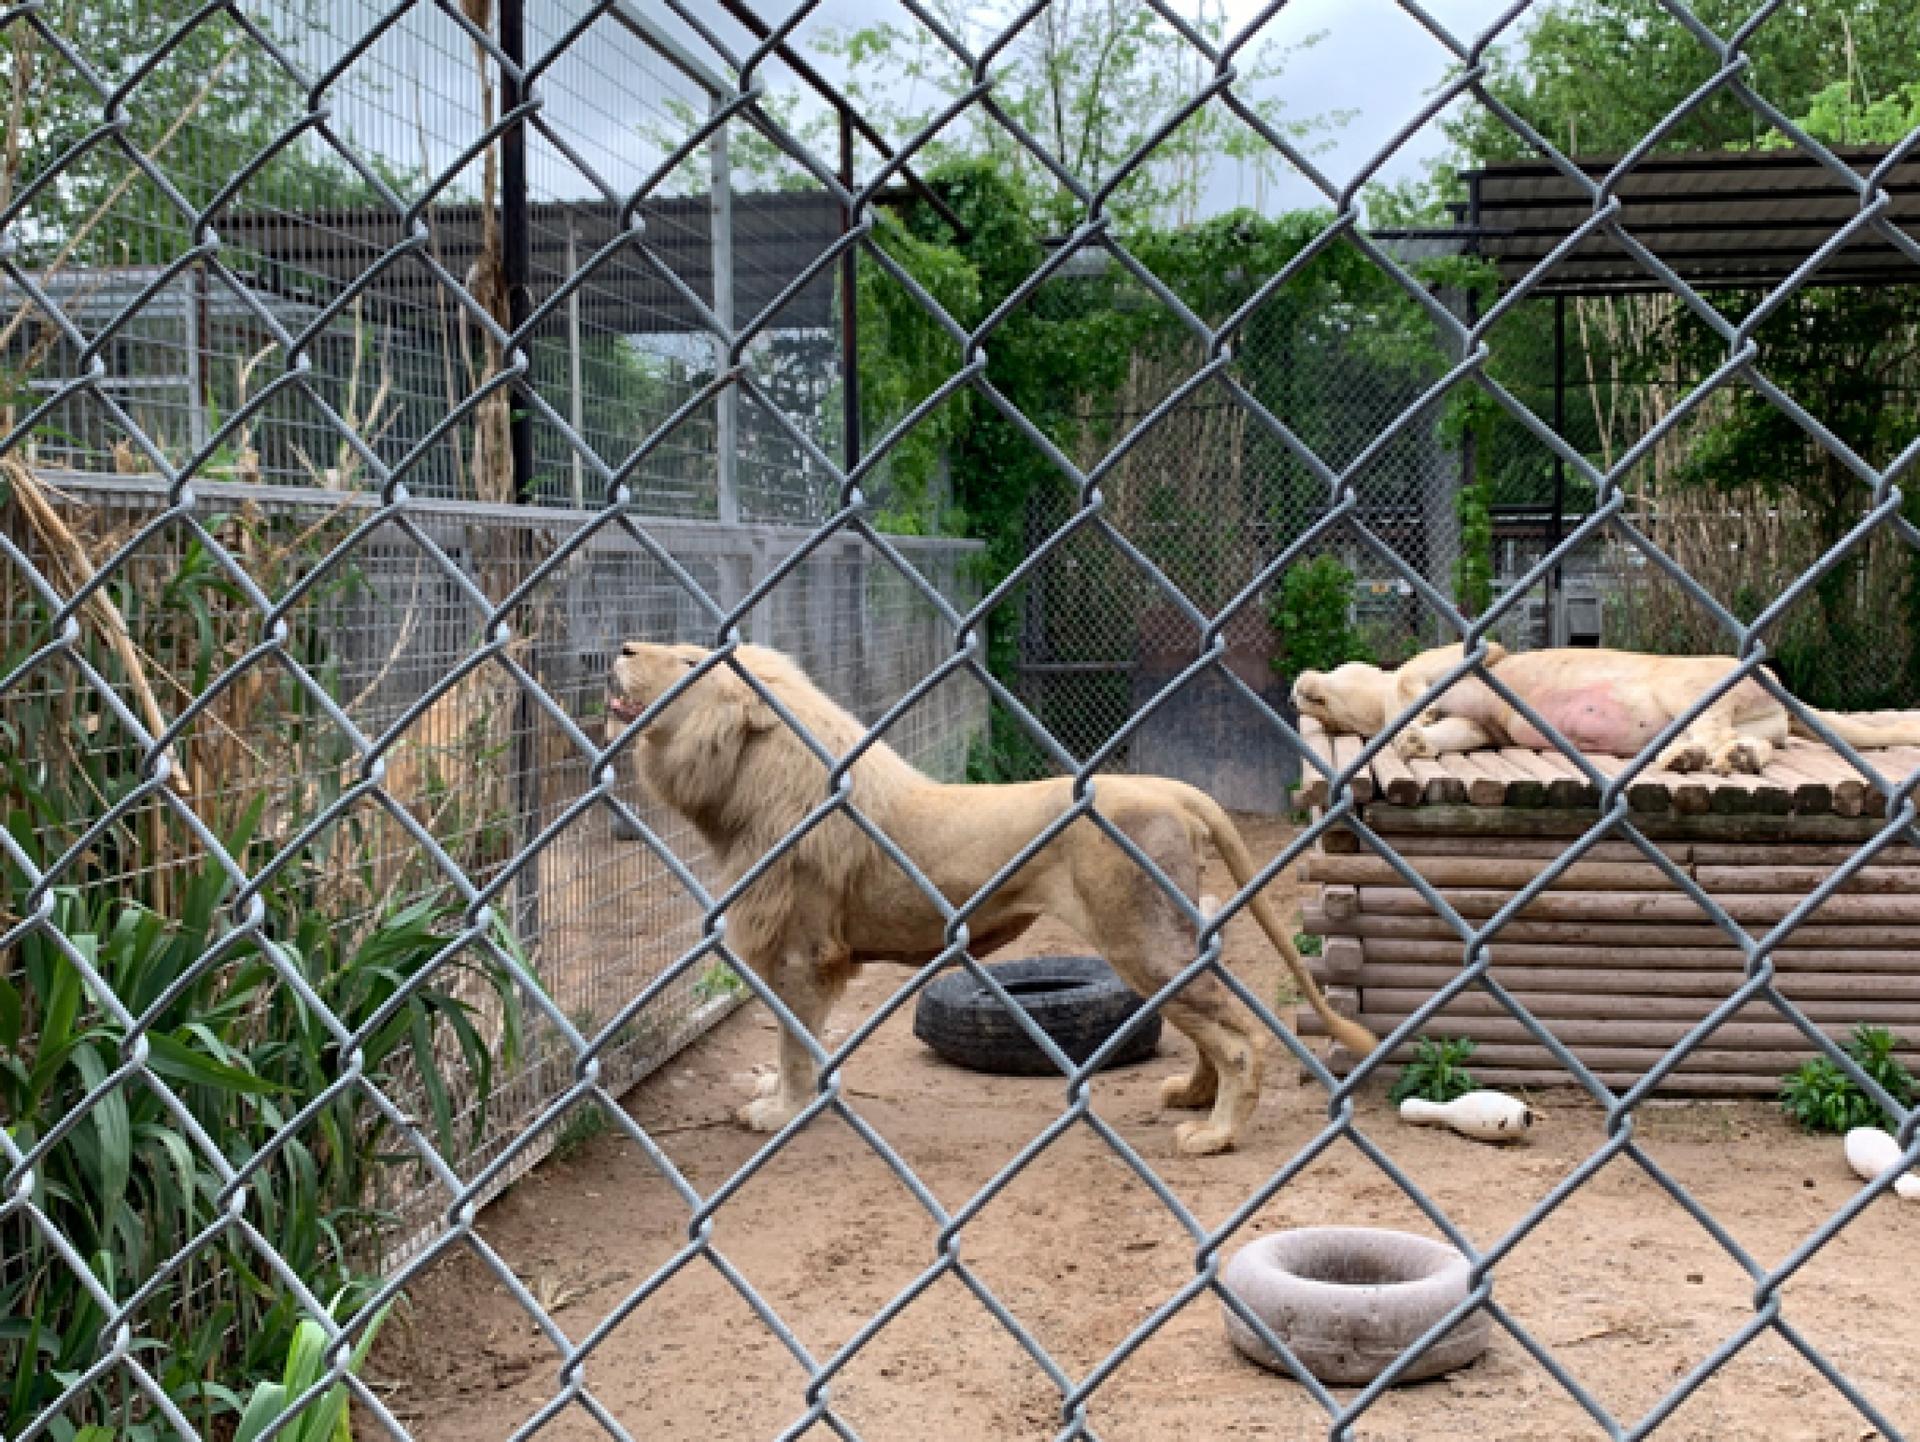 Lions in a roadside zoo